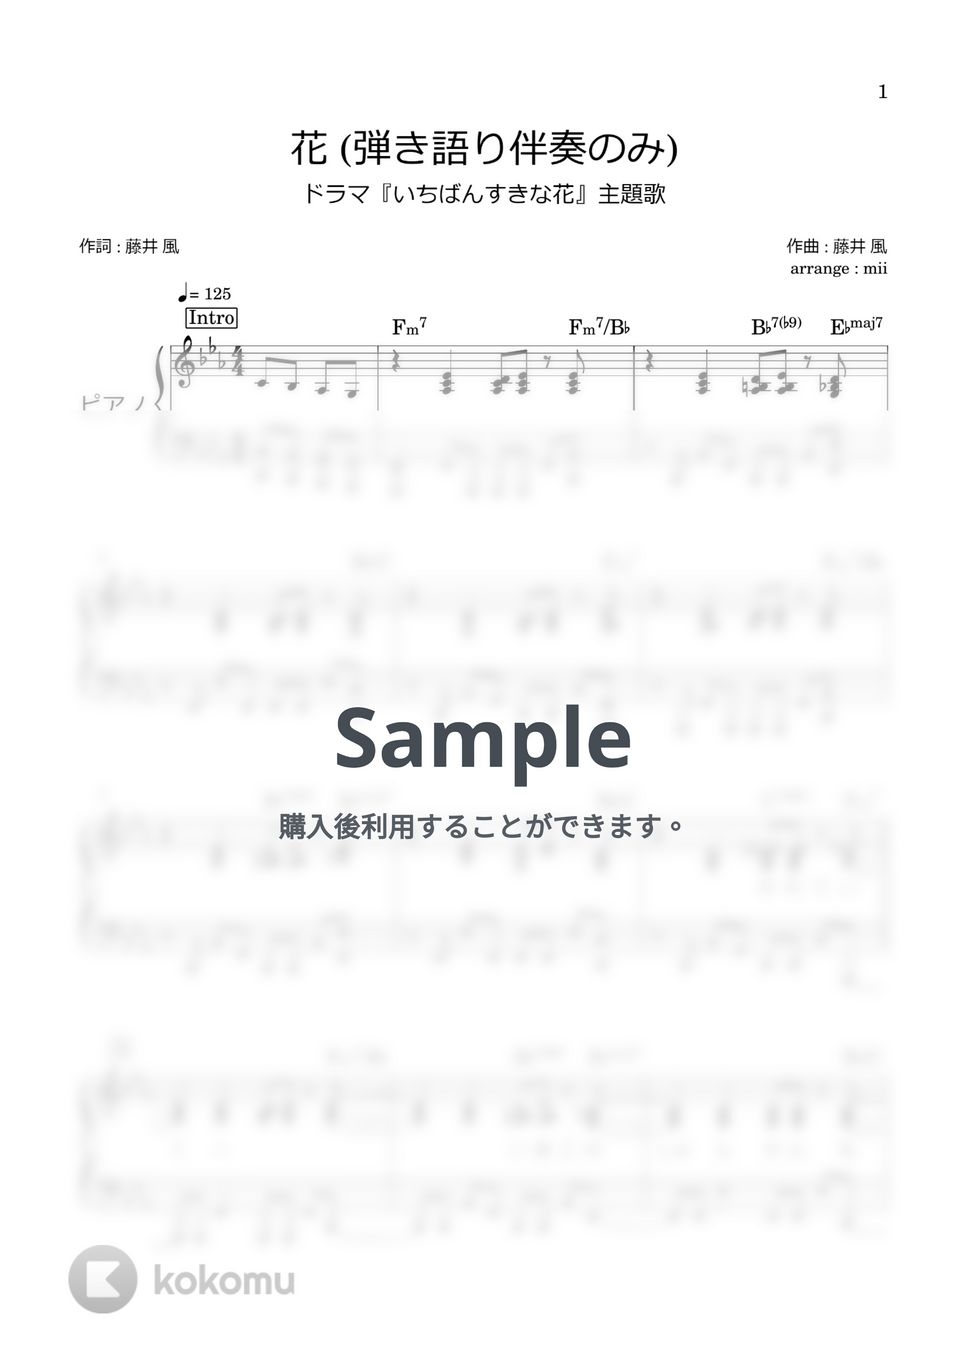 藤井風 - 花 (伴奏のみ いちばんすきな花 主題歌) by miiの楽譜棚